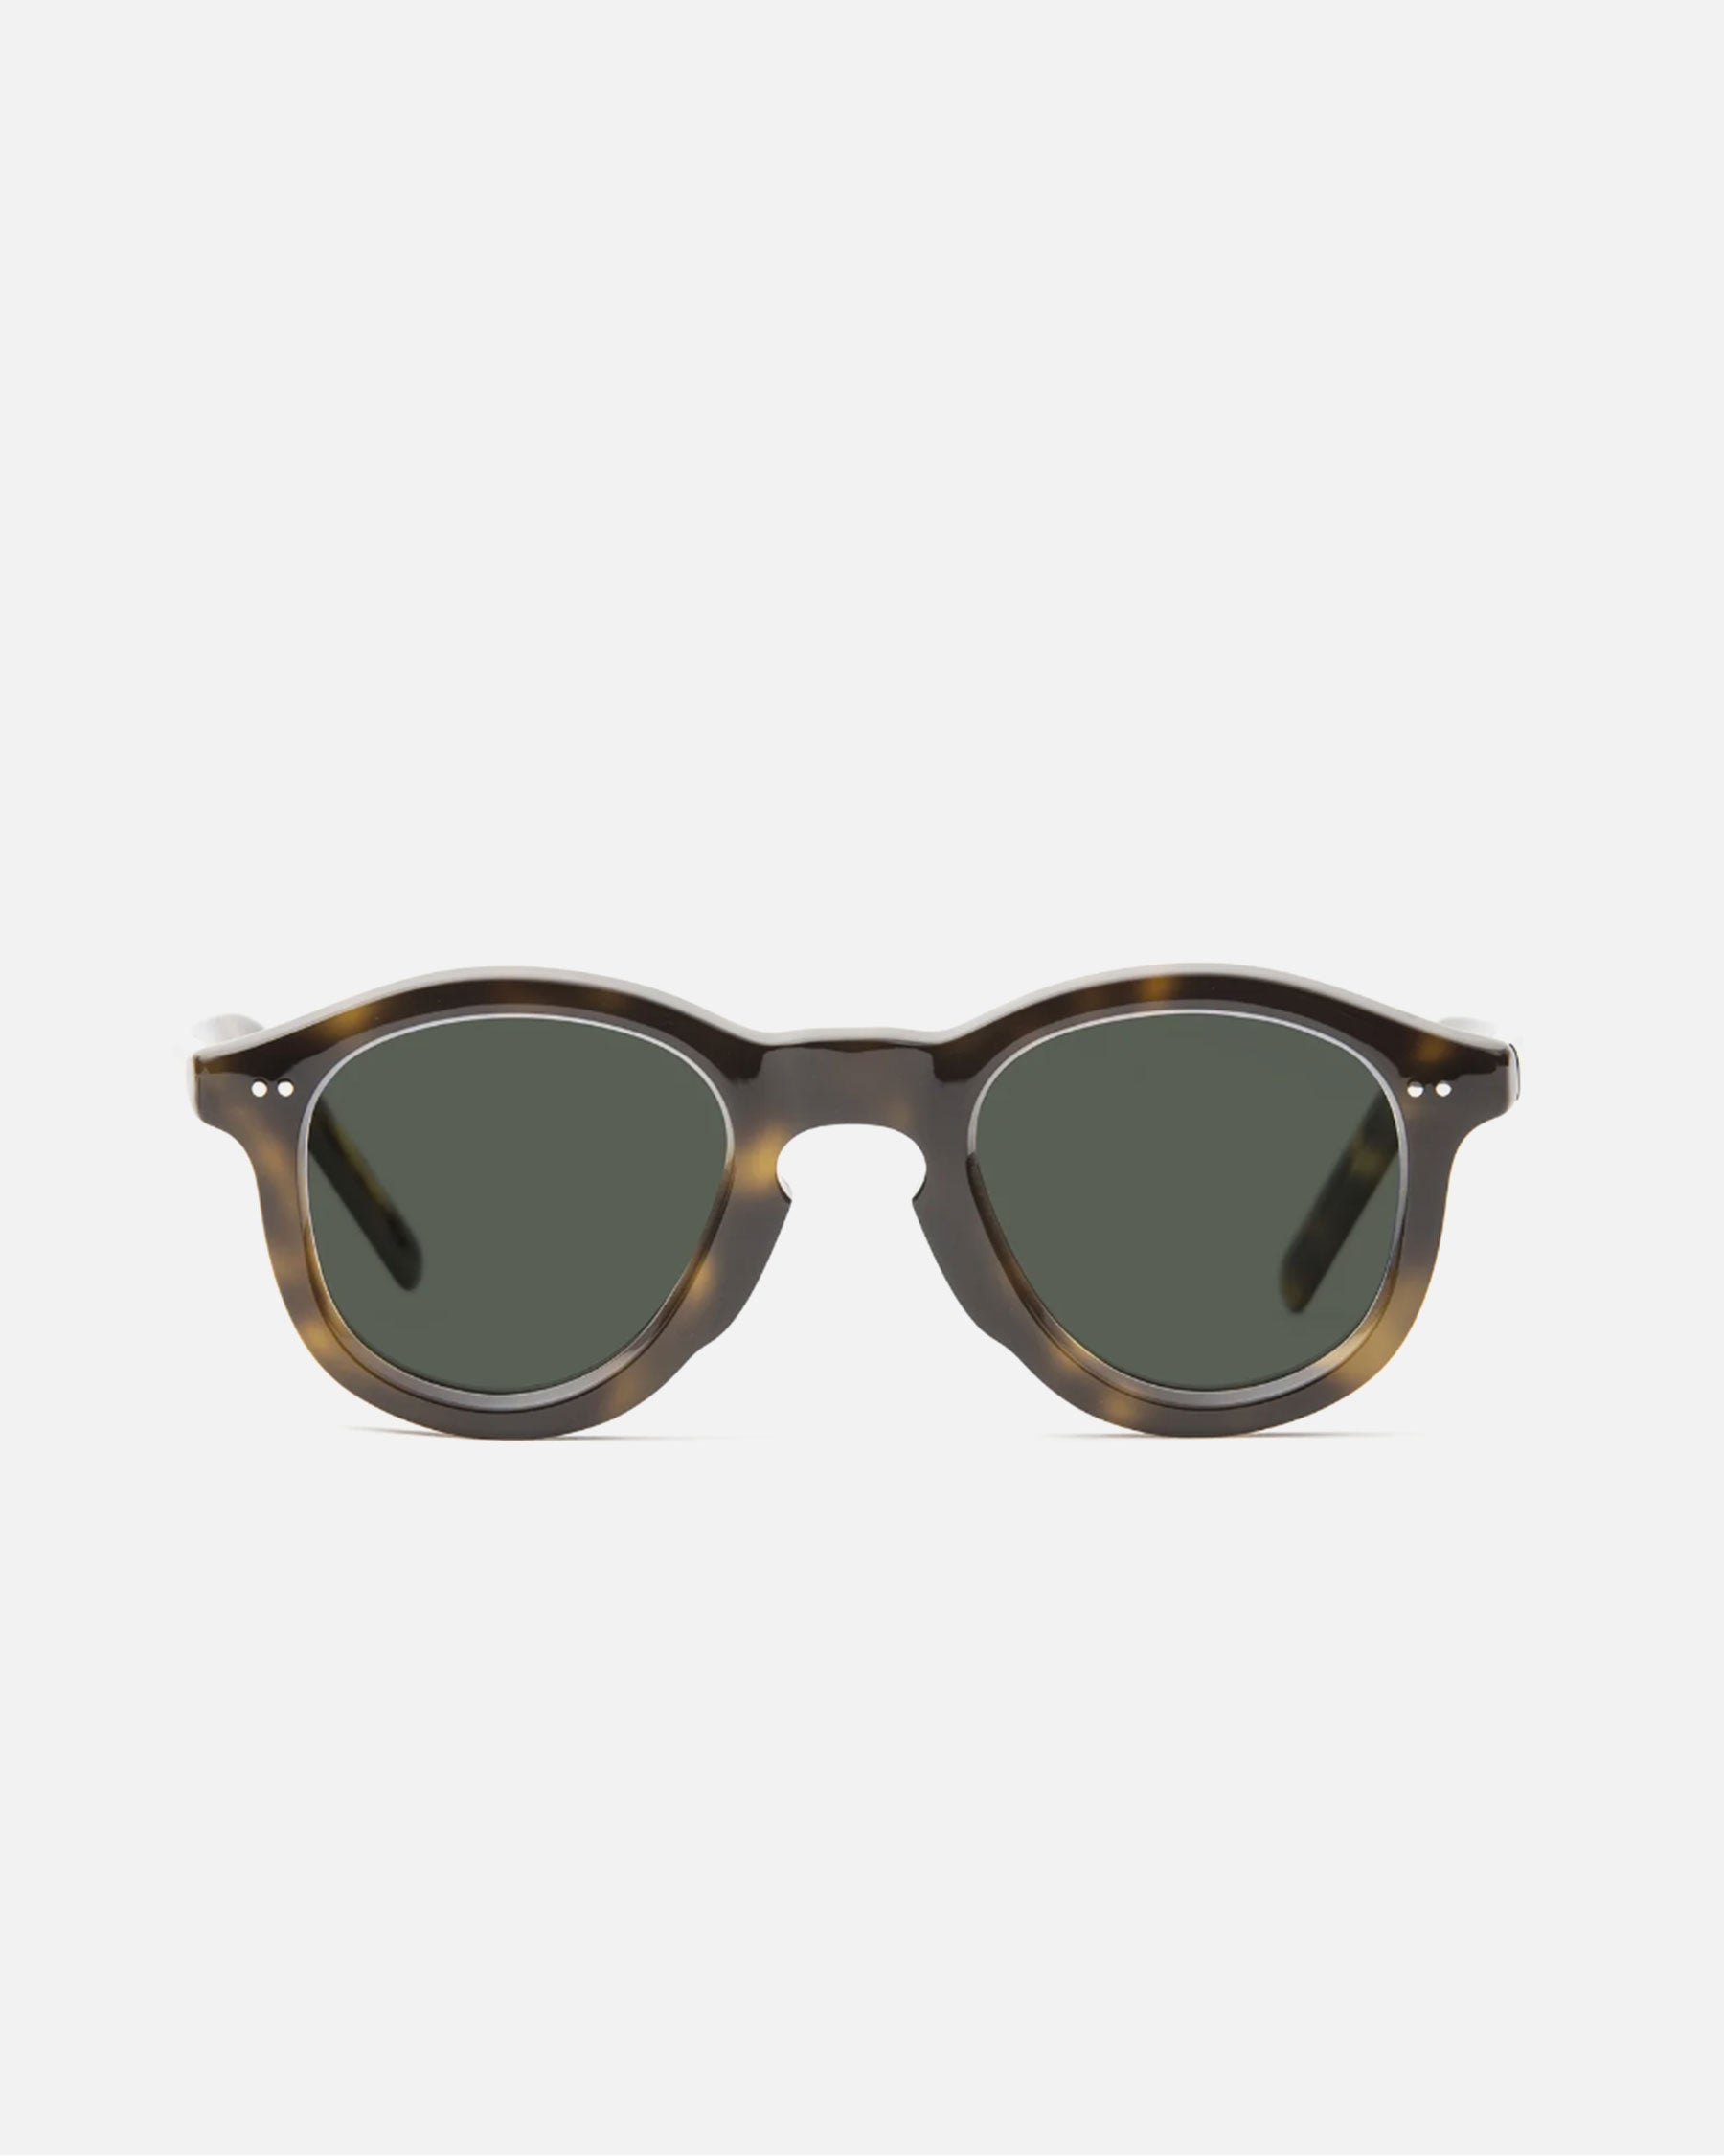 gp-20 Sunglasses Ecaille Jaune